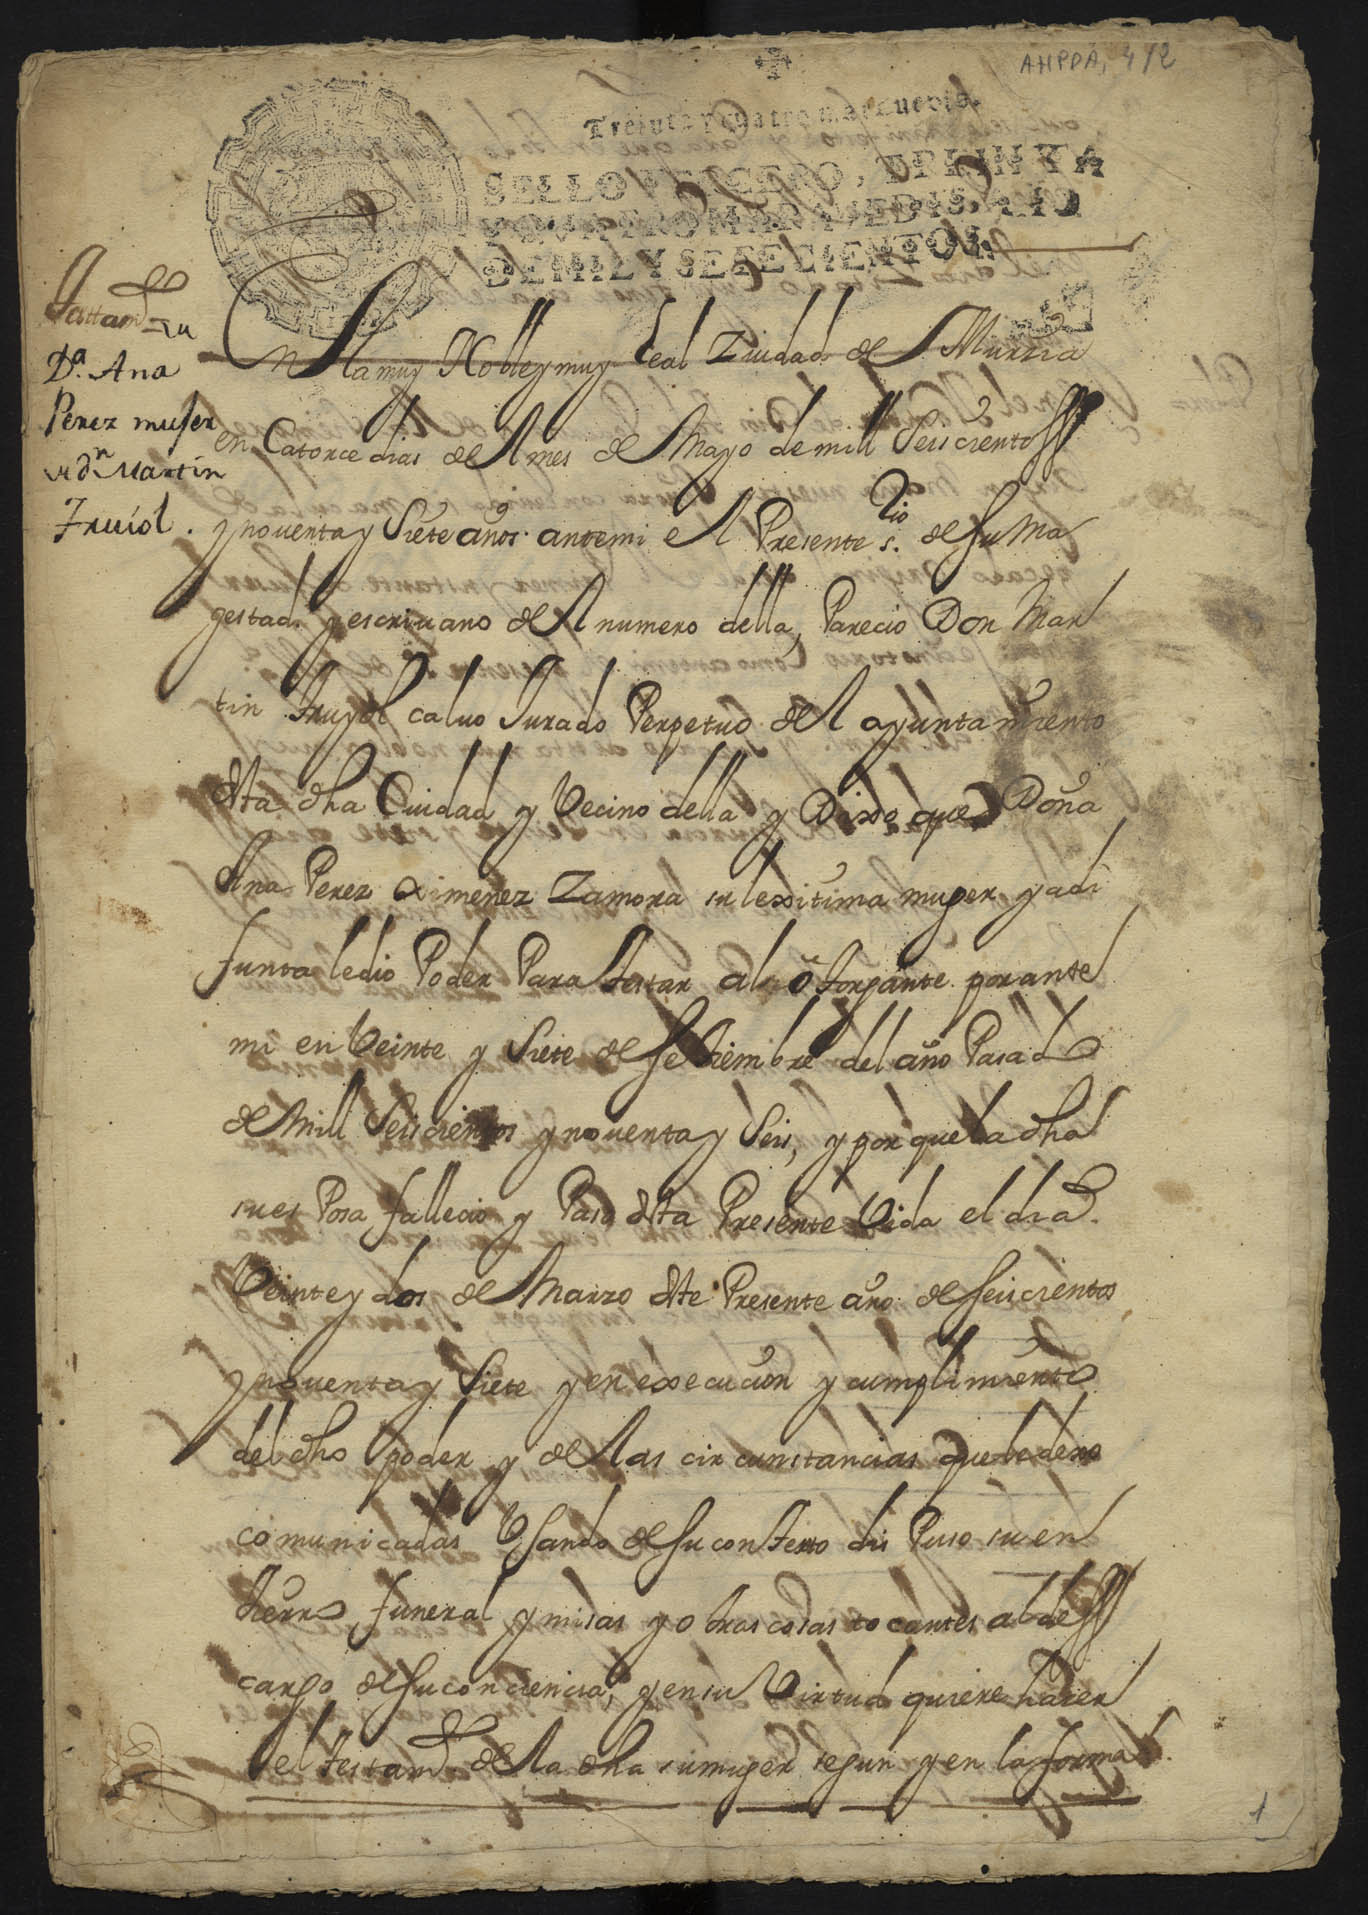 Traslado auténtico del testamento de Ana Pérez Jiménez Zamora, vecina de Murcia, realizado ante el notario Fulgencio Peinado el 14 de mayo de 1697.